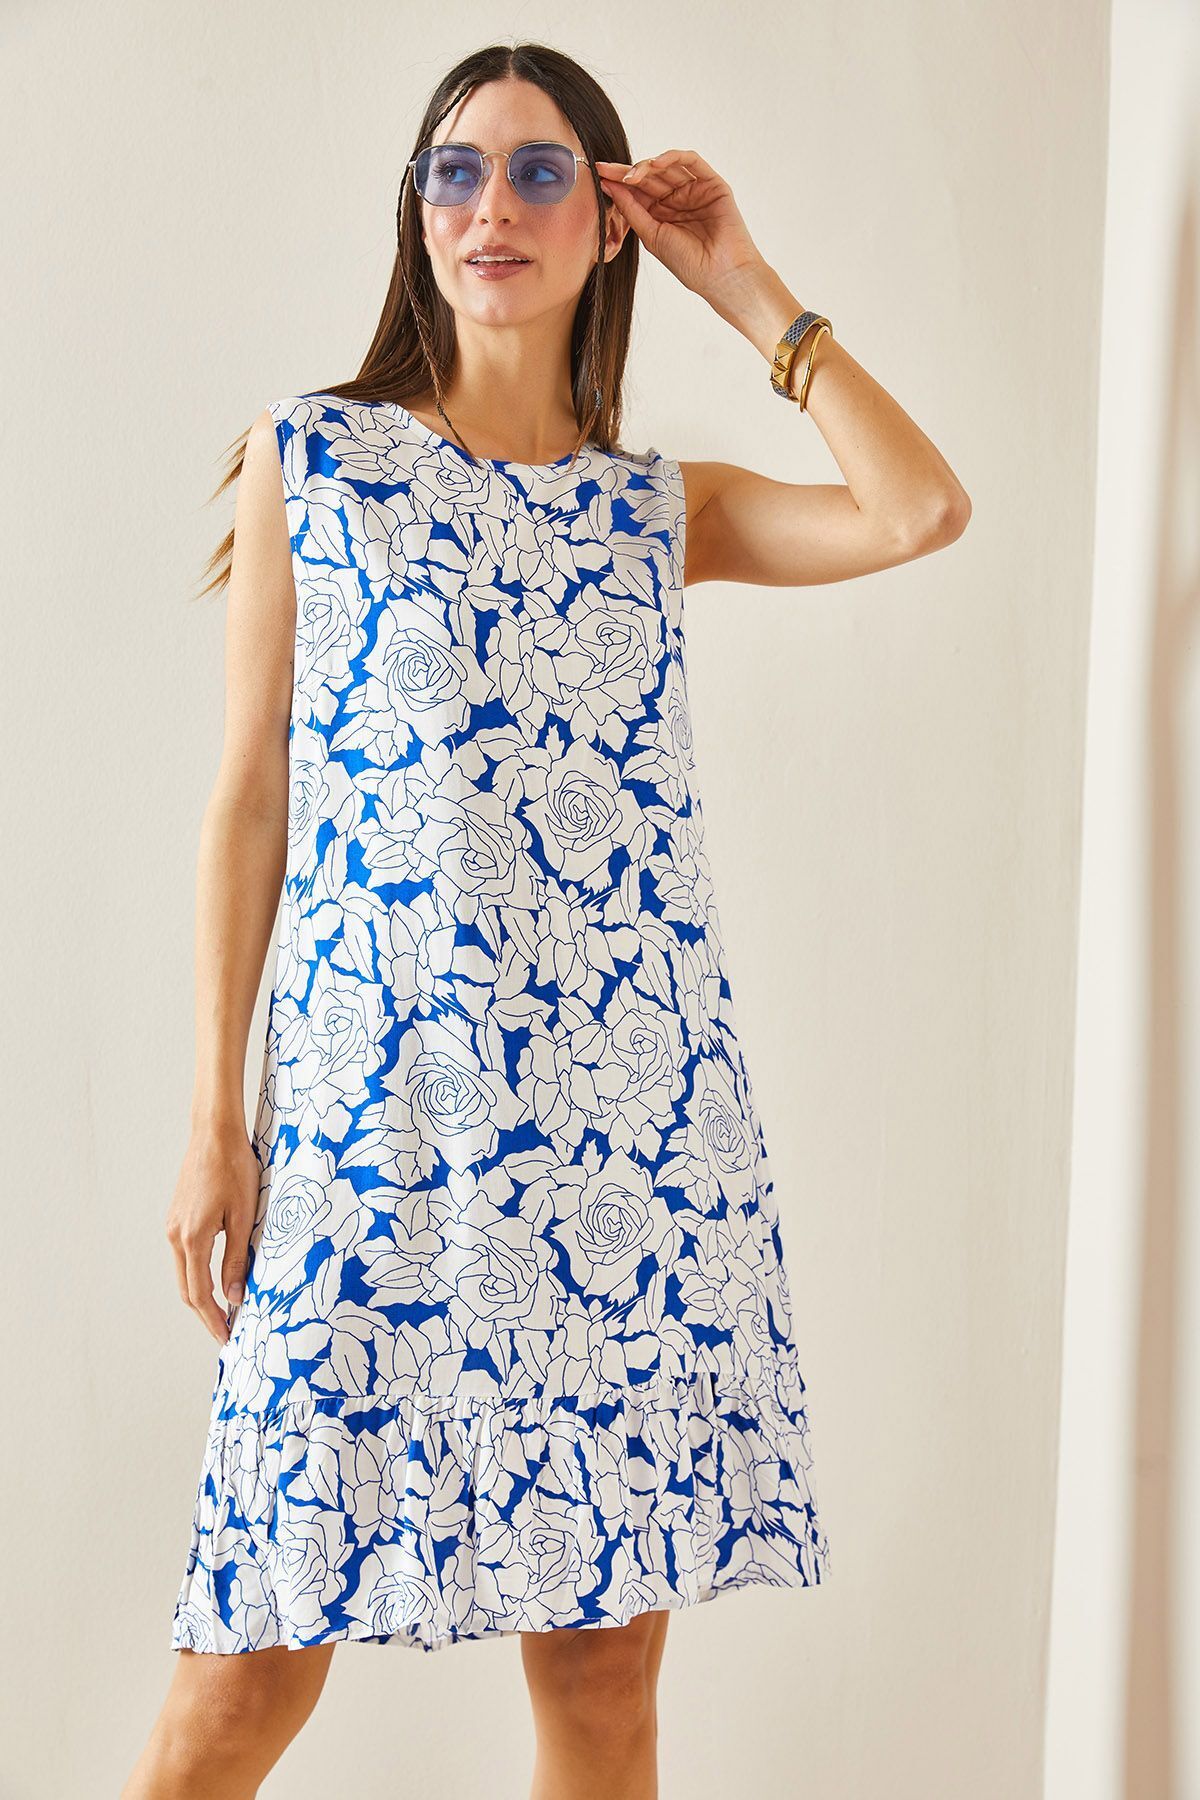 XHAN Mavi Çiçek Desenli Kalın Askılı Midi Elbise 5YXK6-48420-12